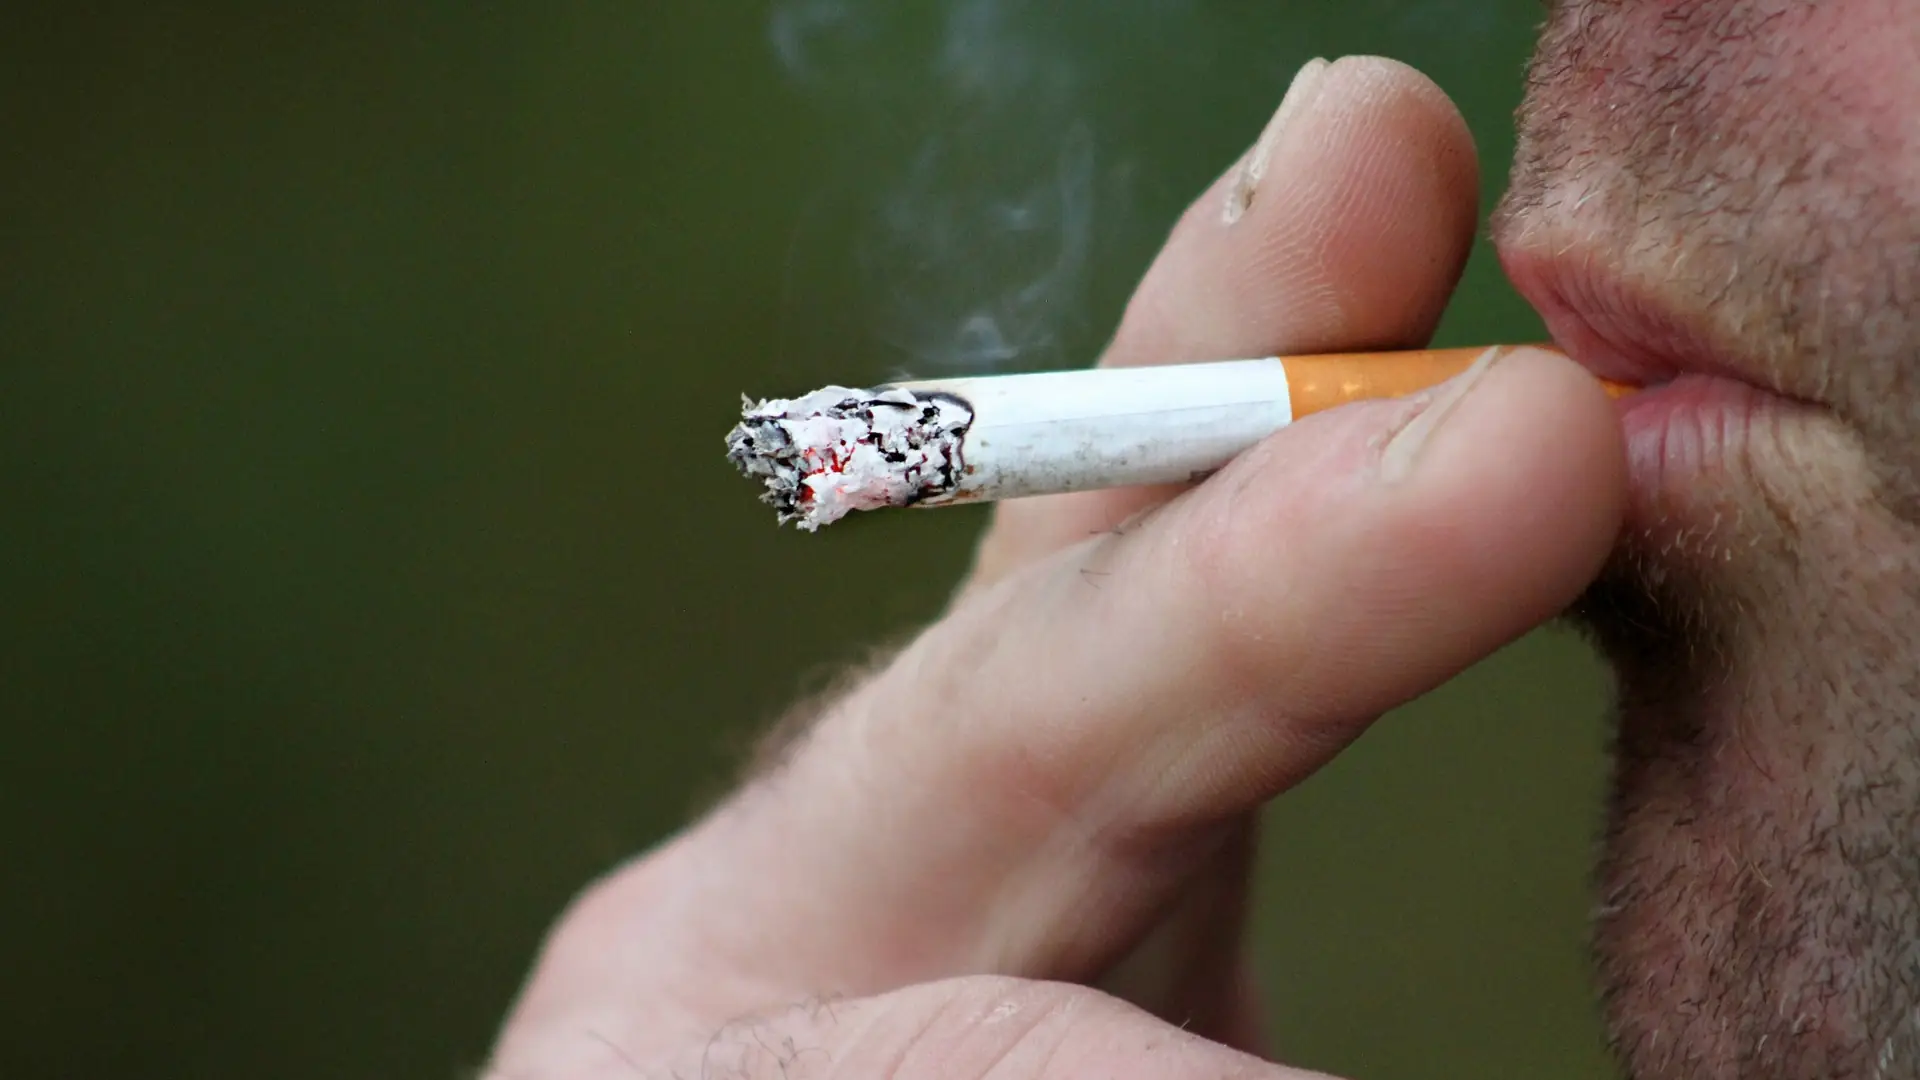 myFoodDoctor: Rauchen erhöht nicht nur das Risiko für Lungenkrebs, sondern kann auch Das Risoiko füer Diabetes und Bluthochdruck erhöhen